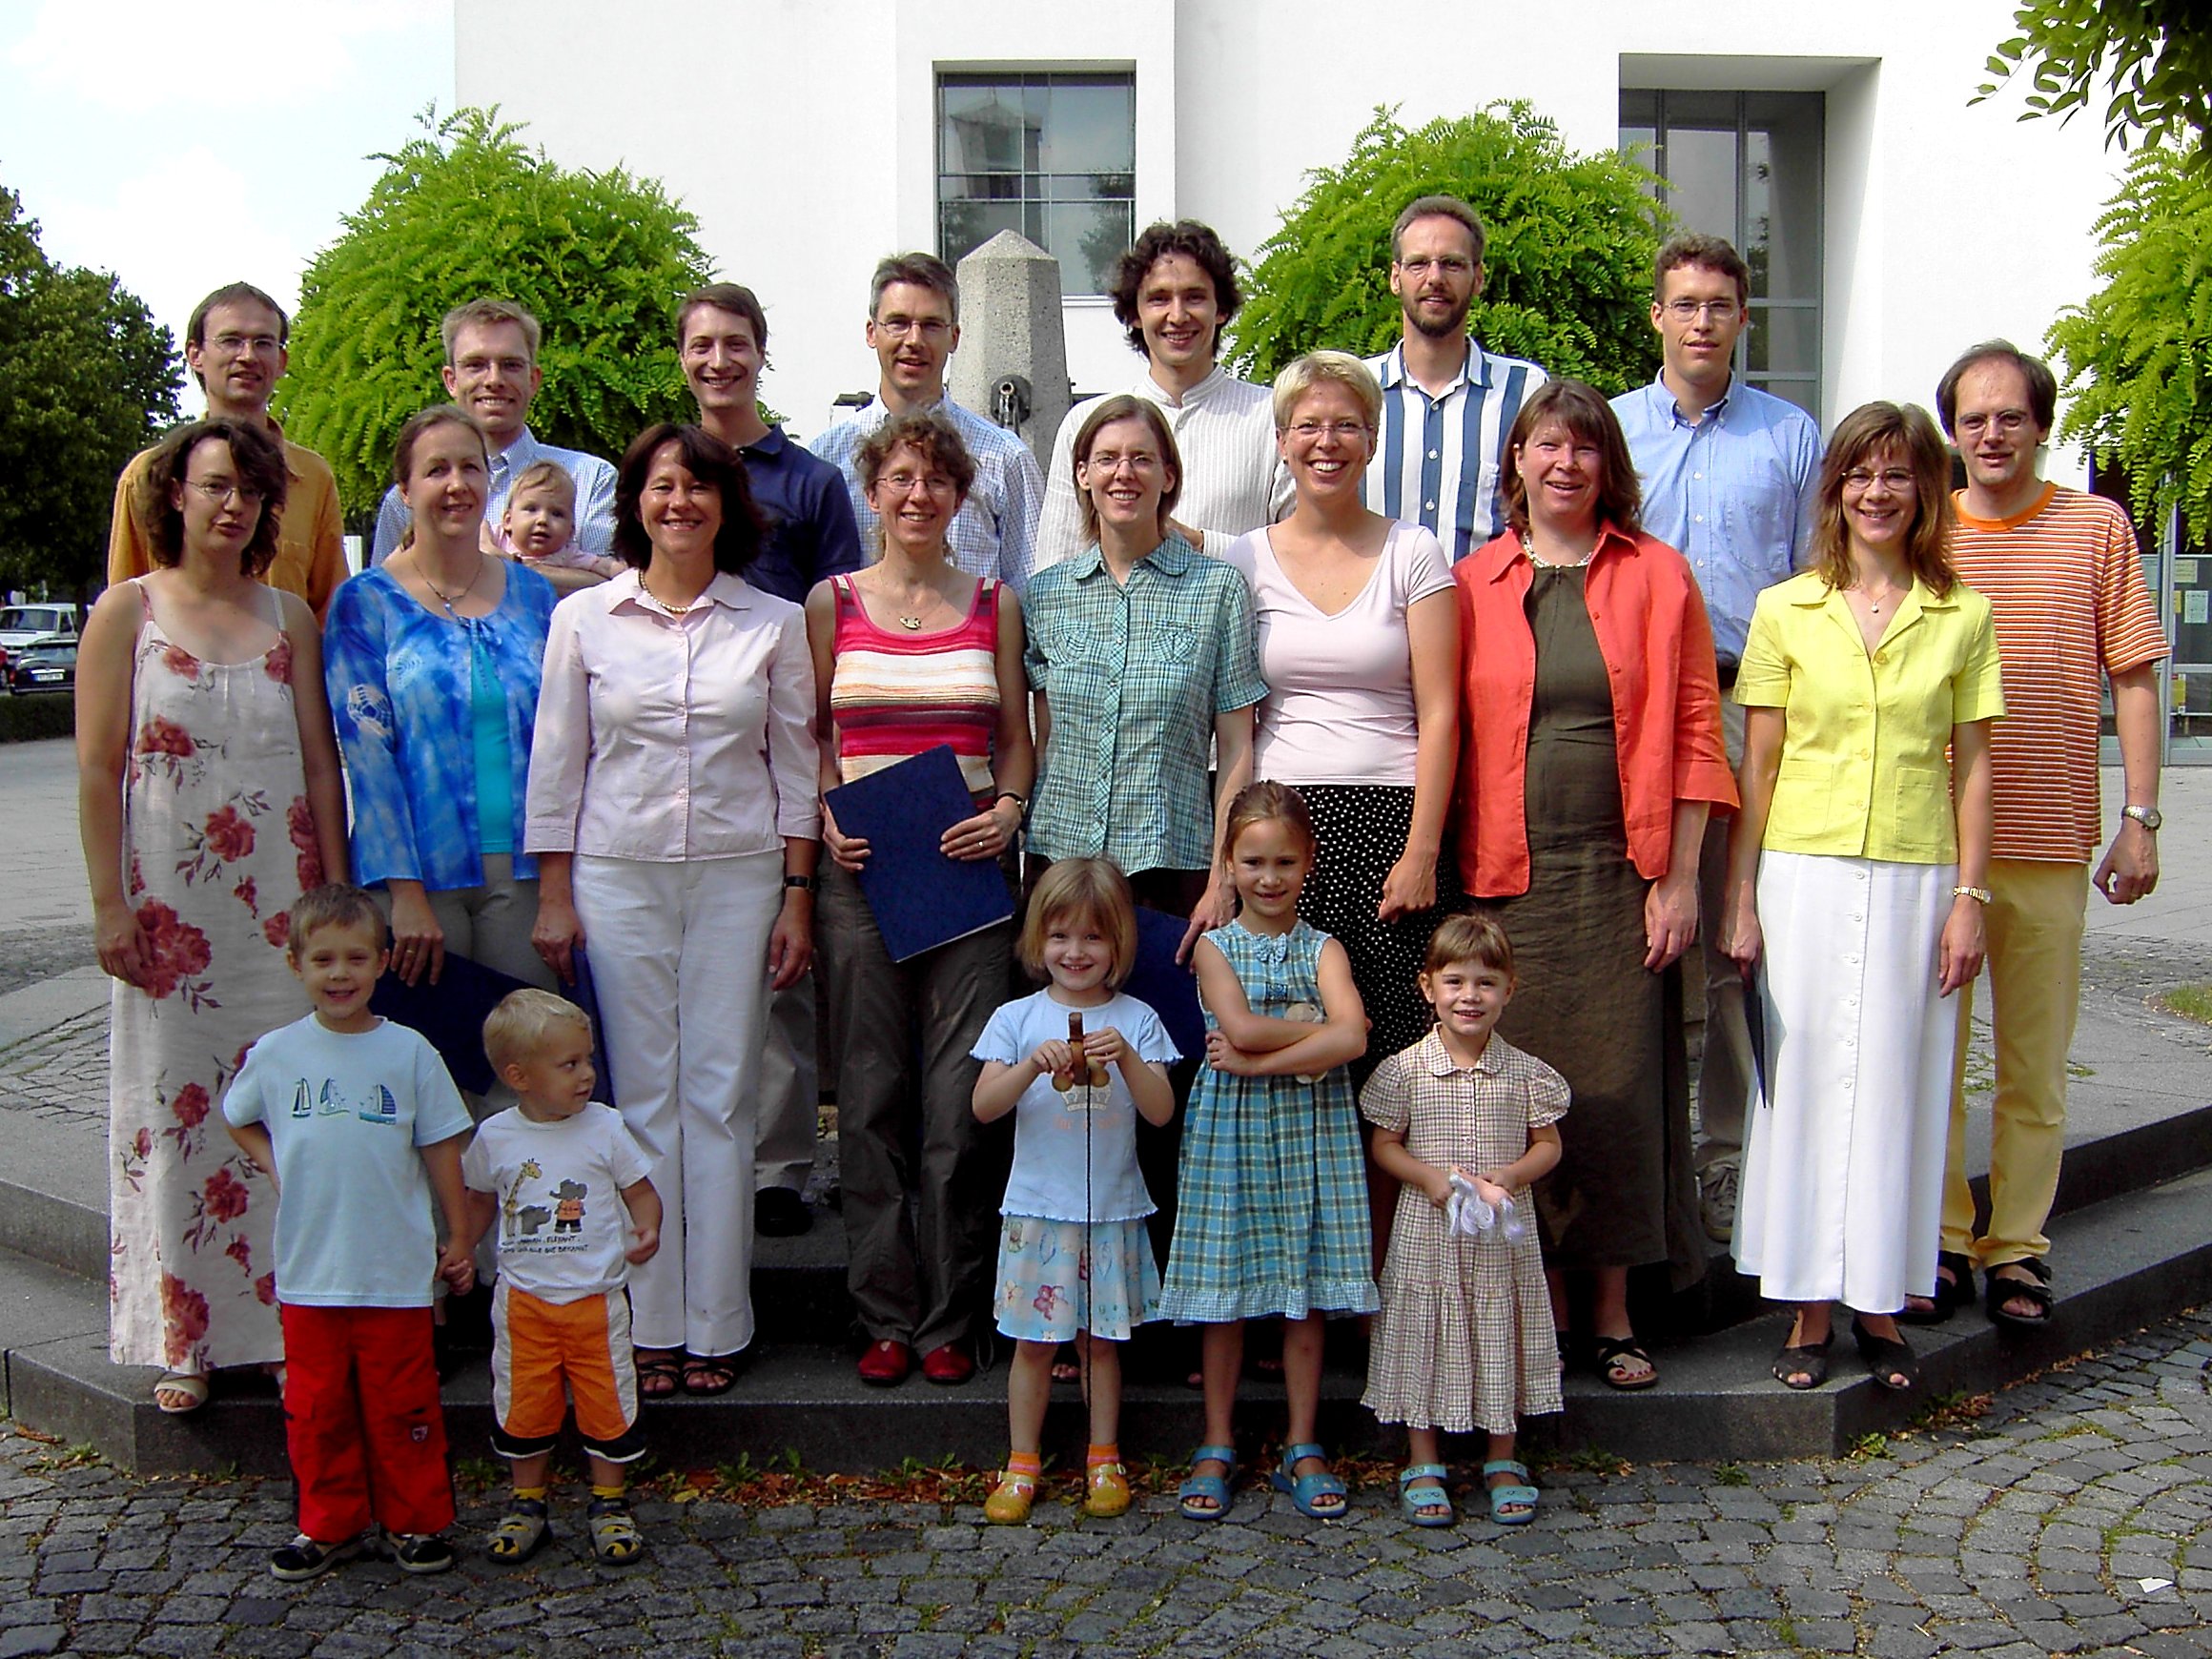 Foto vom Chor Canticolino vor der Dietrich-Bonhoeffer-Kirche im Juli 2006